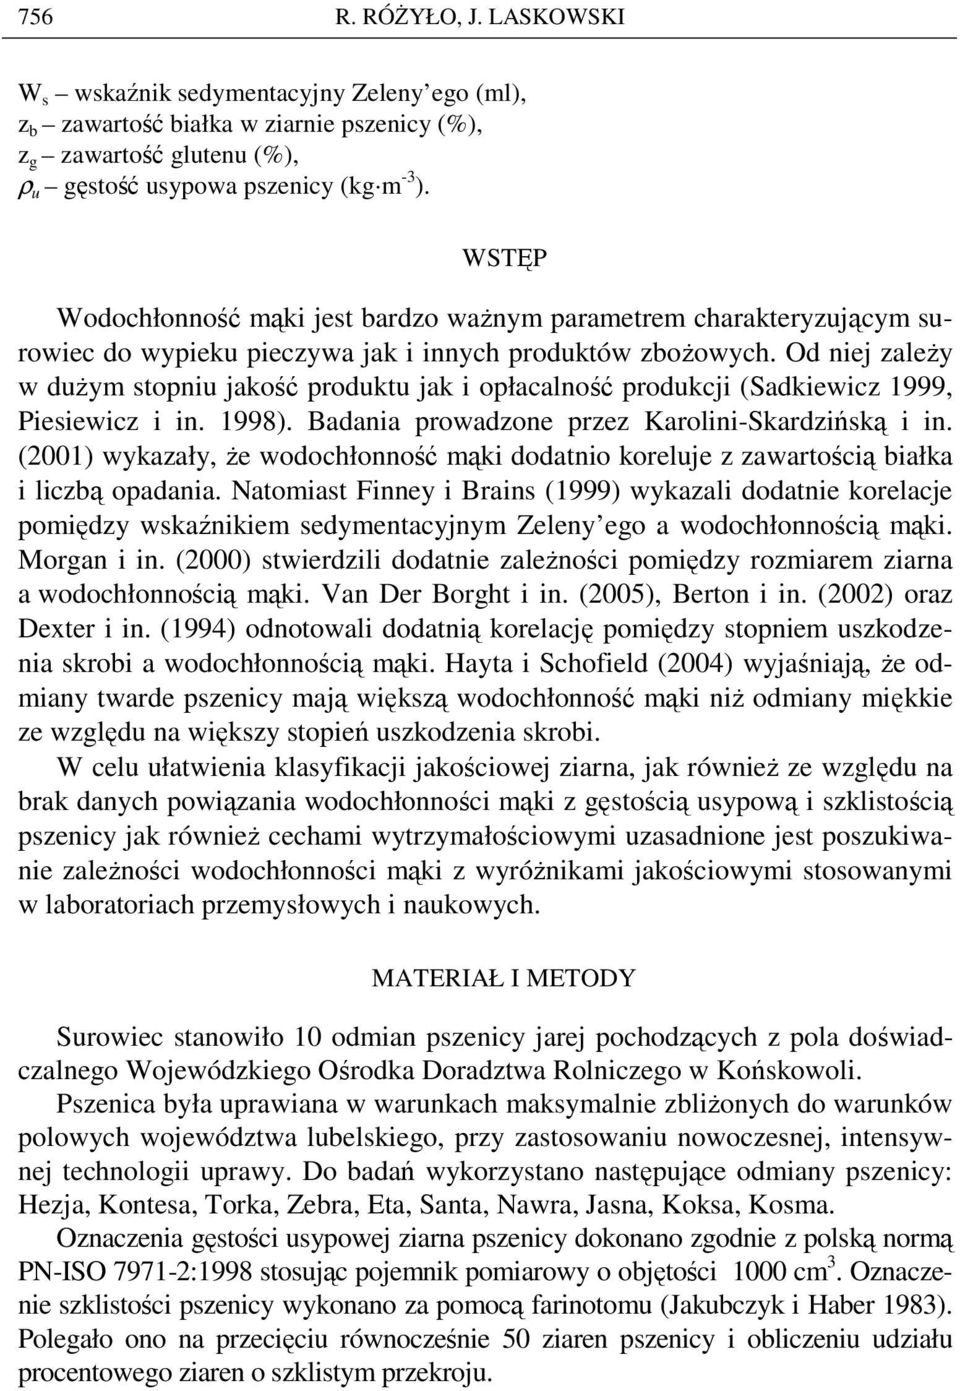 Od niej zaleŝy w duŝym stopniu jakość produktu jak i opłacalność produkcji (Sadkiewicz 1999, Piesiewicz i in. 1998). Badania prowadzone przez Karolini-Skardzińską i in.